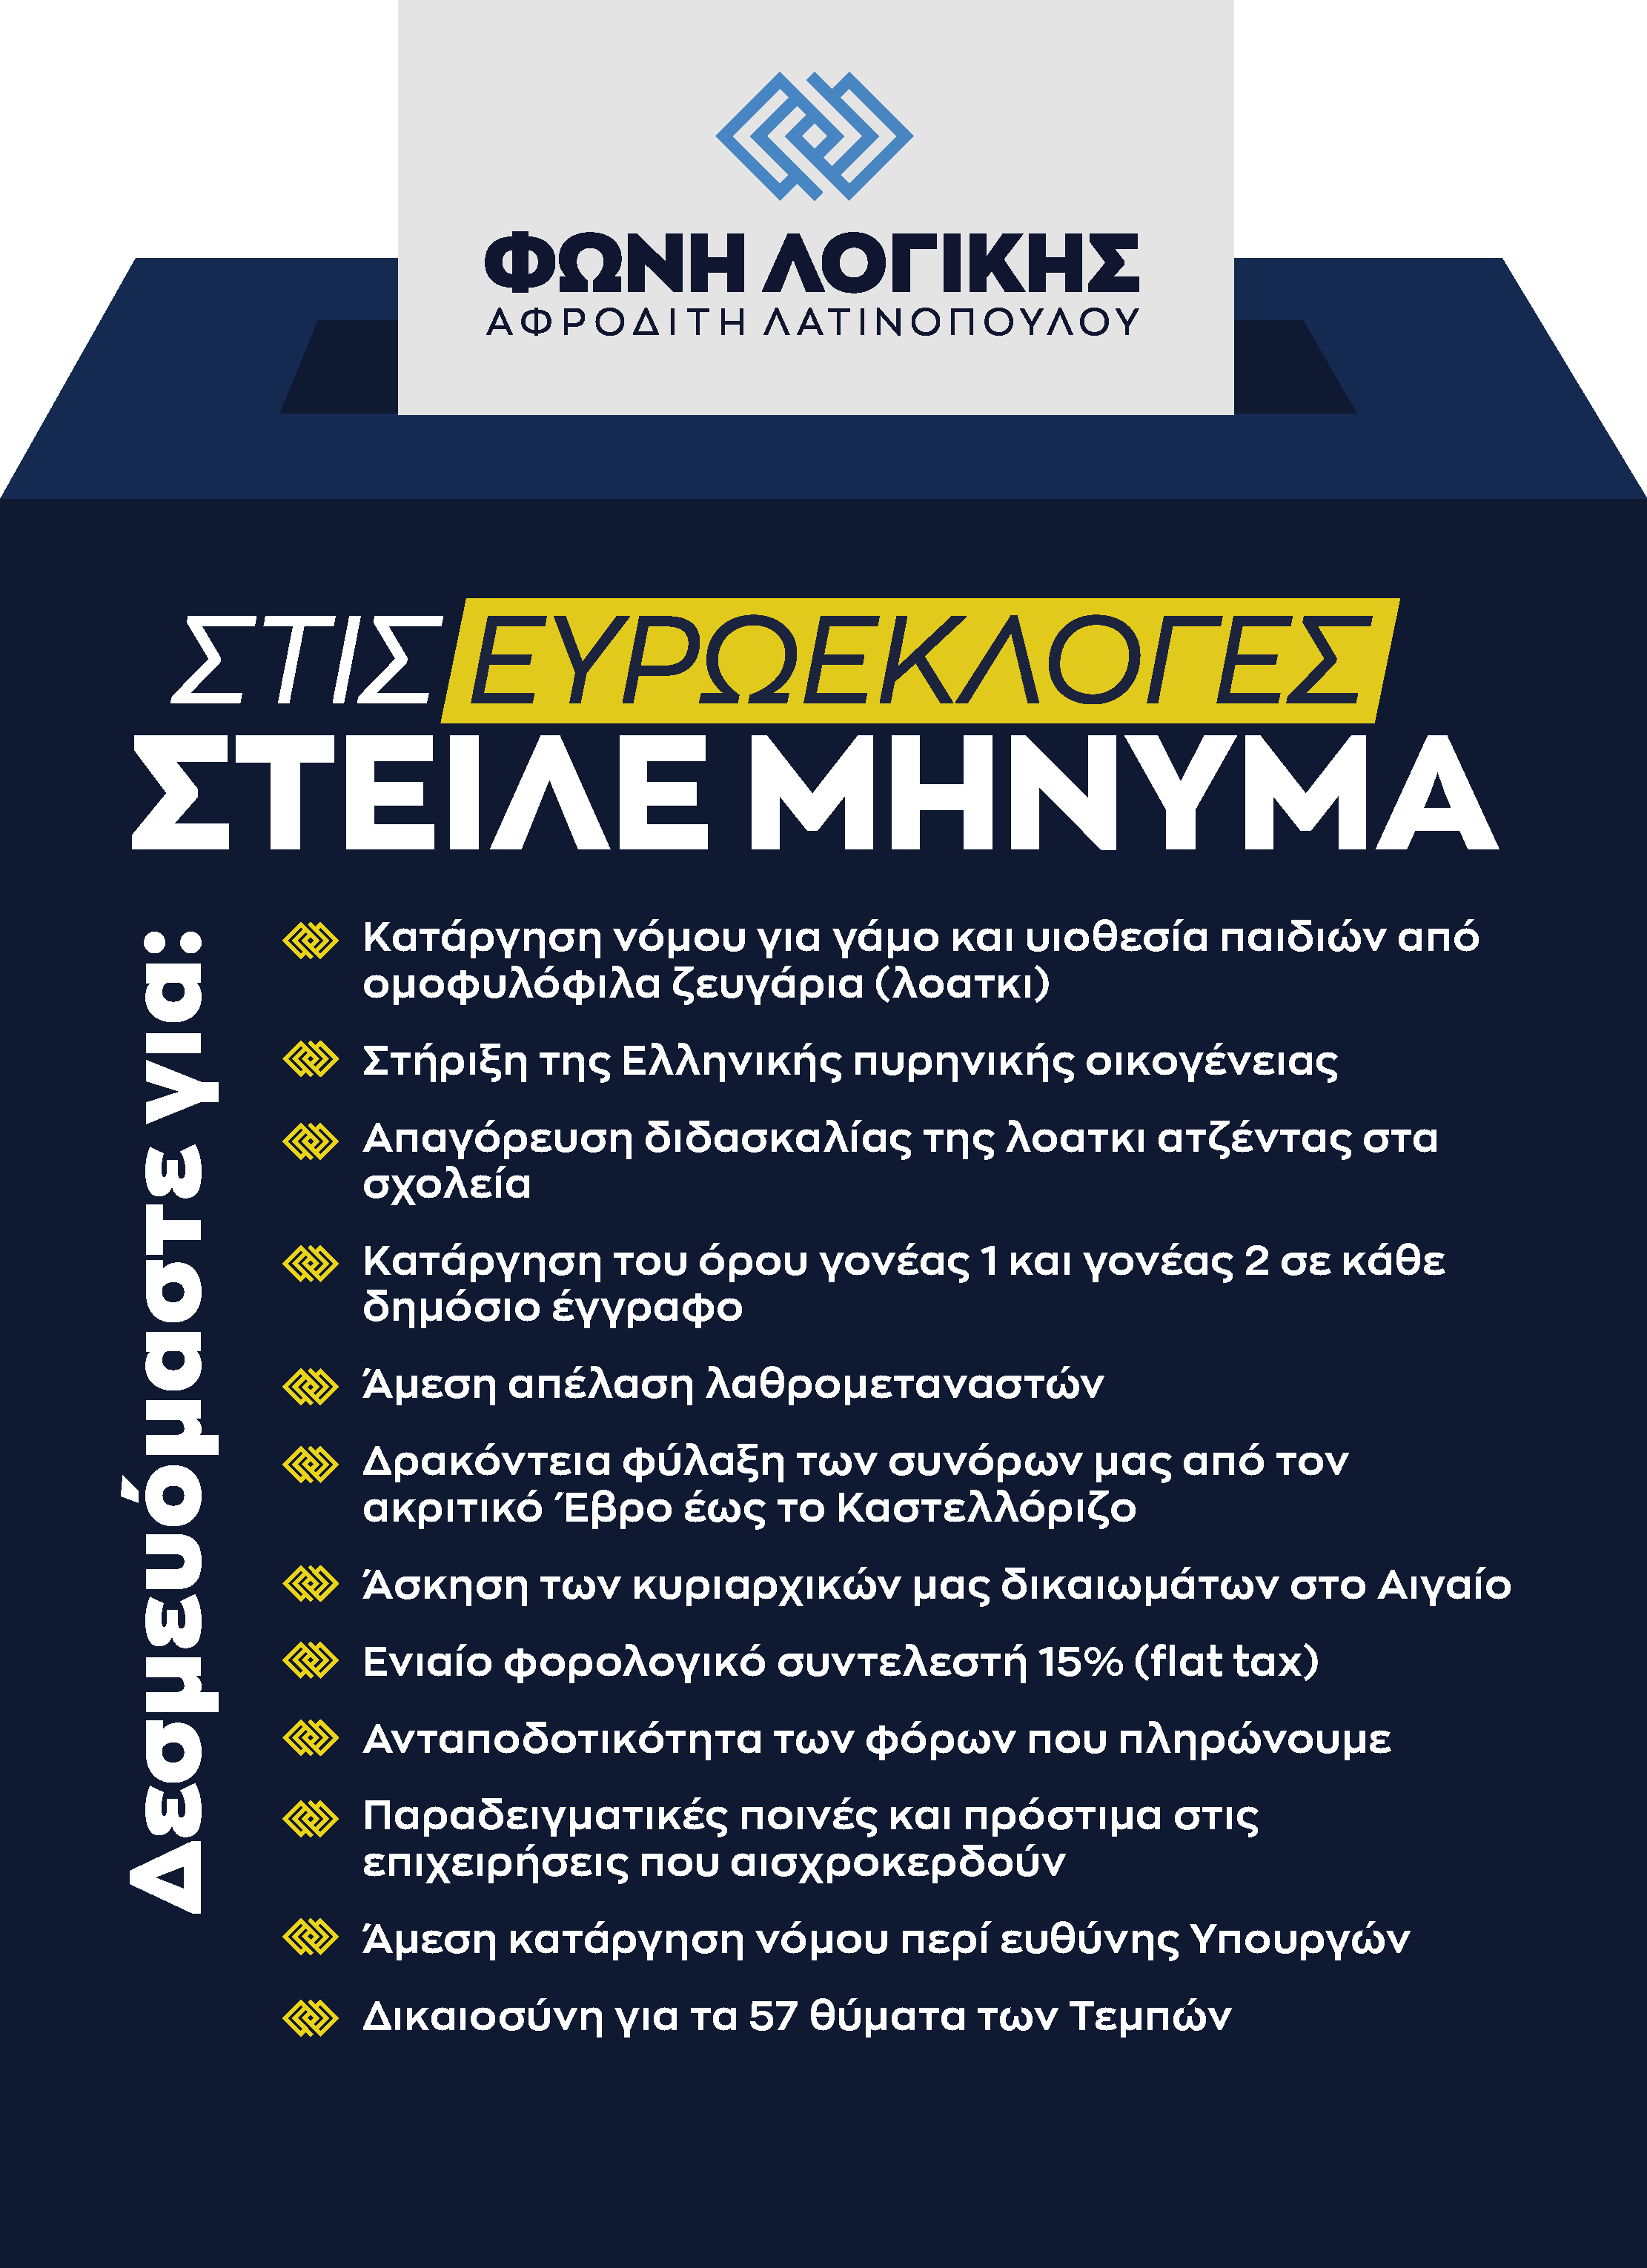 Κατάργηση νόμου για γάμο και υιοθεσία παιδιών από ομοφυλόφιλα ζευγάρια (λοατκι) Στήριξη της Ελληνικής πυρηνικής οικογένειας Απαγόρευση διδασκαλίας της λοατκι ατζέντας στα σχολεία Κατάργηση του όρου γονέας 1 και γονέας 2 σε κάθε δημόσιο έγγραφο Άμεση απέλαση λαθρομεταναστών Δρακόντεια φύλαξη των συνόρων μας από τον ακριτικό Έβρο έως το Καστελλόριζο Άσκηση των κυριαρχικών μας δικαιωμάτων στο Αιγαίο Ενιαίο φορολογικό συντελεστή 15% (flat tax) Ανταποδοτικότητα των φόρων που πληρώνουμε Παραδειγματικές ποινές και πρόστιμα στις επιχειρήσεις που αισχροκερδούν Άμεση κατάργηση νόμου περί ευθύνης Υπουργών Δικαιοσύνη για τα 57 θύματα των Τεμπών